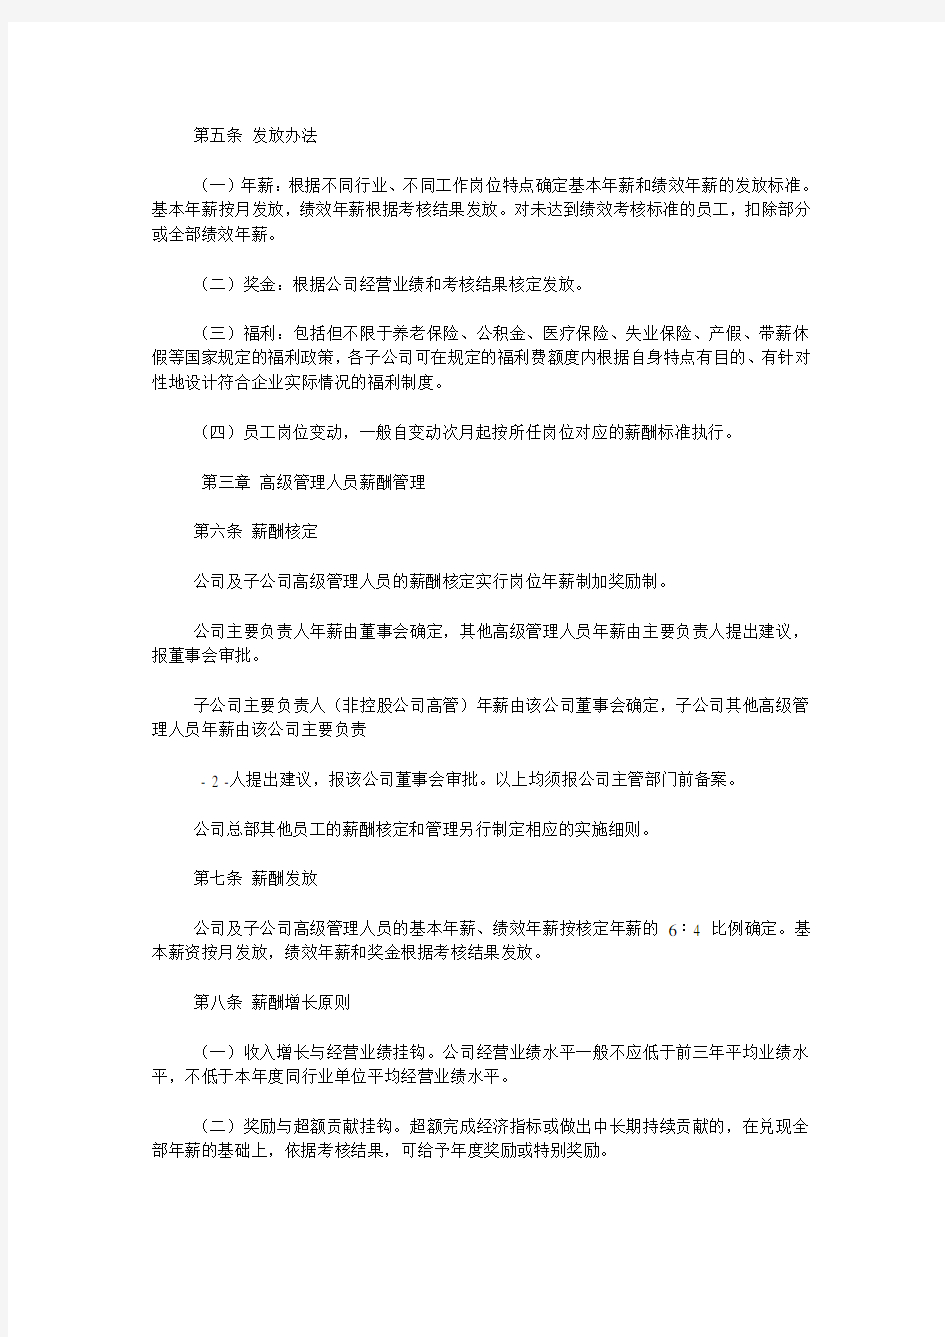 上海城投控股股份有限公司薪酬管理制度